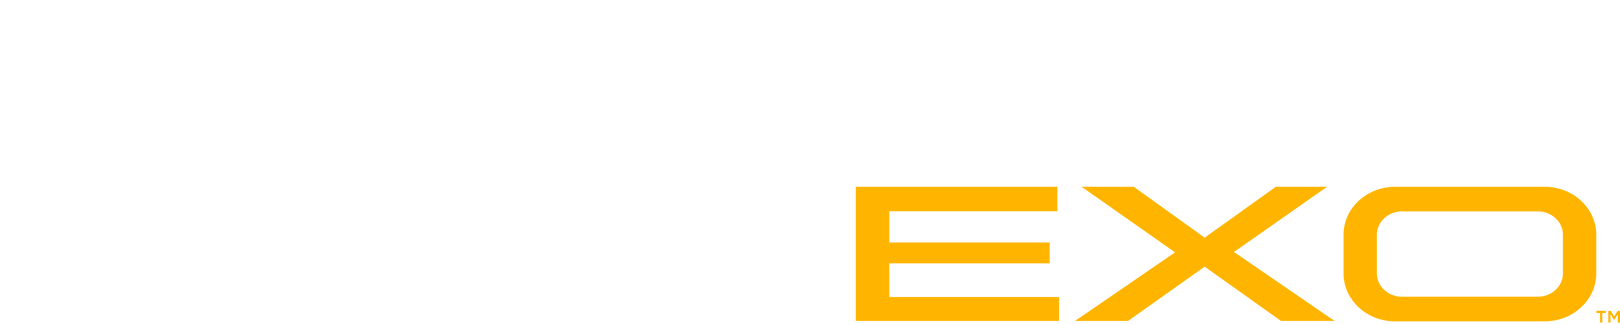 DuPont Kevlar EXO Logo